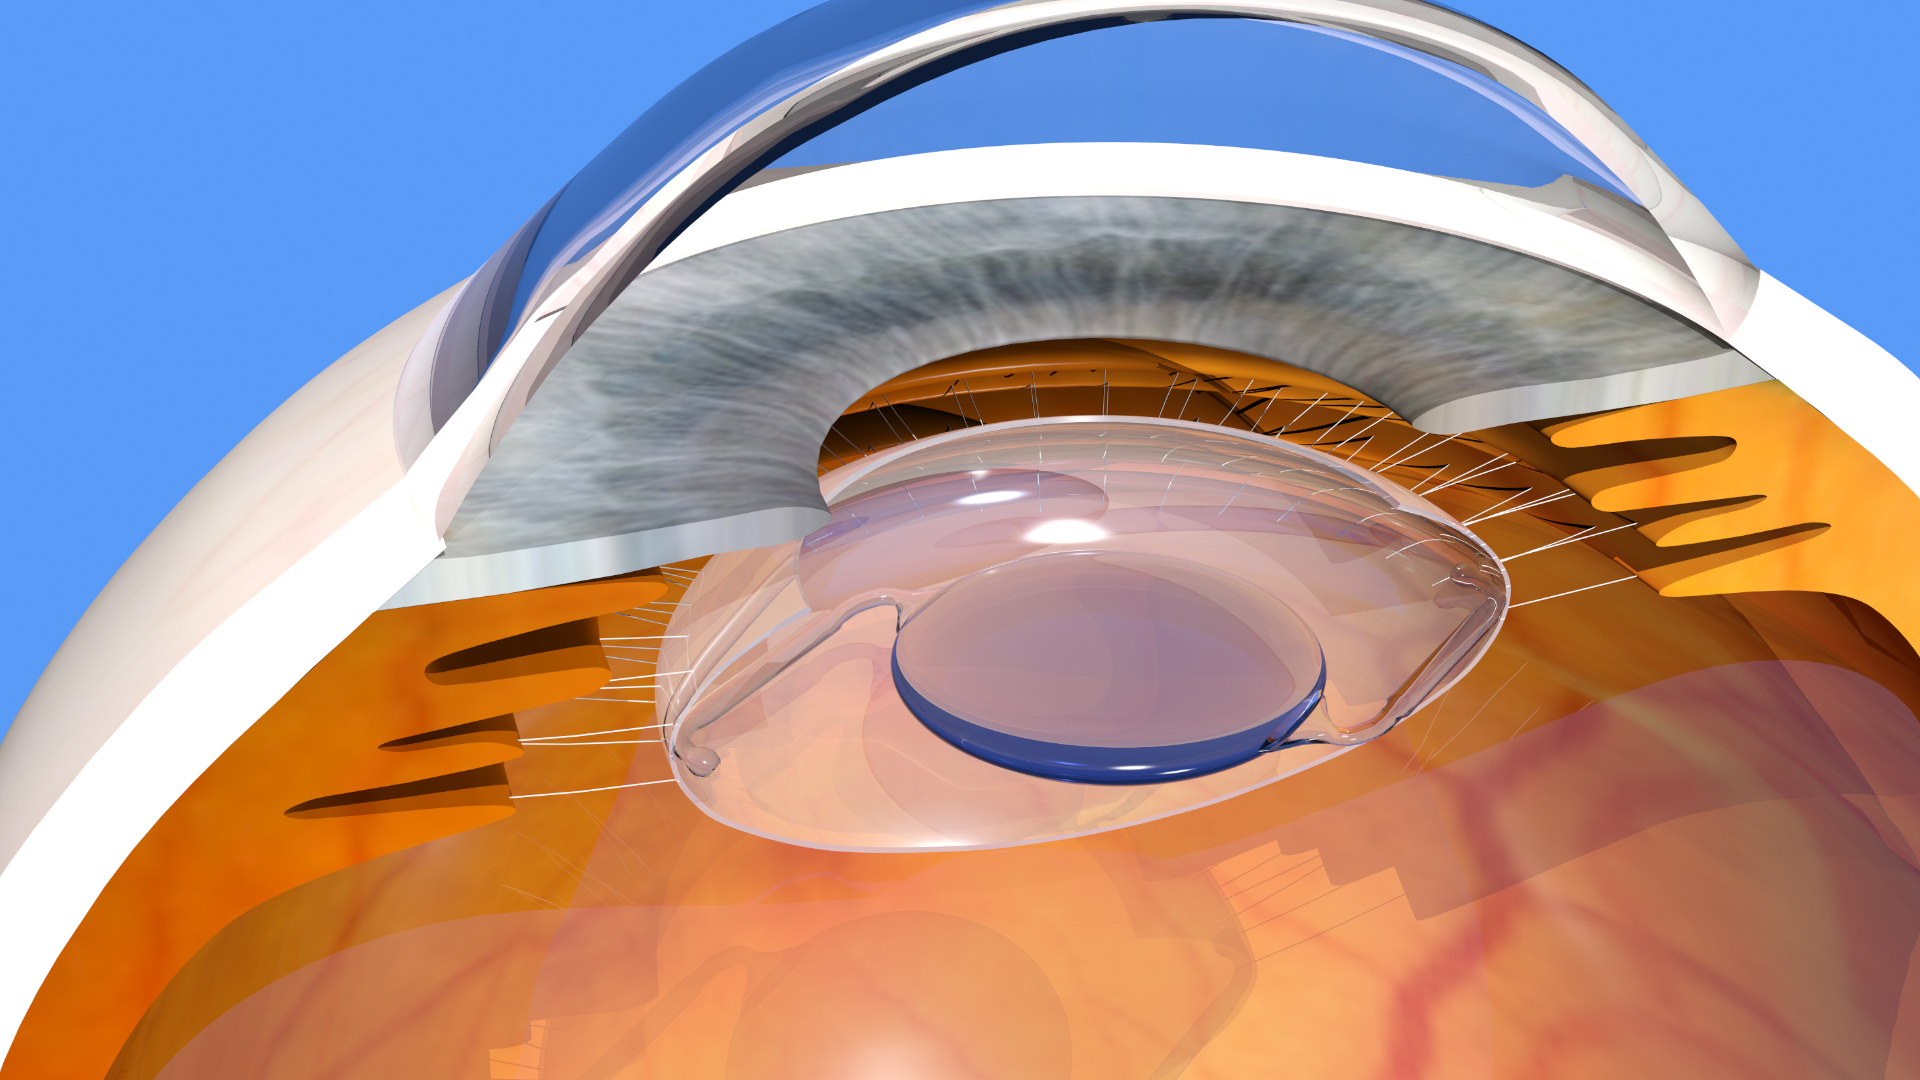 Modélisation 3D d'un implant oculaire